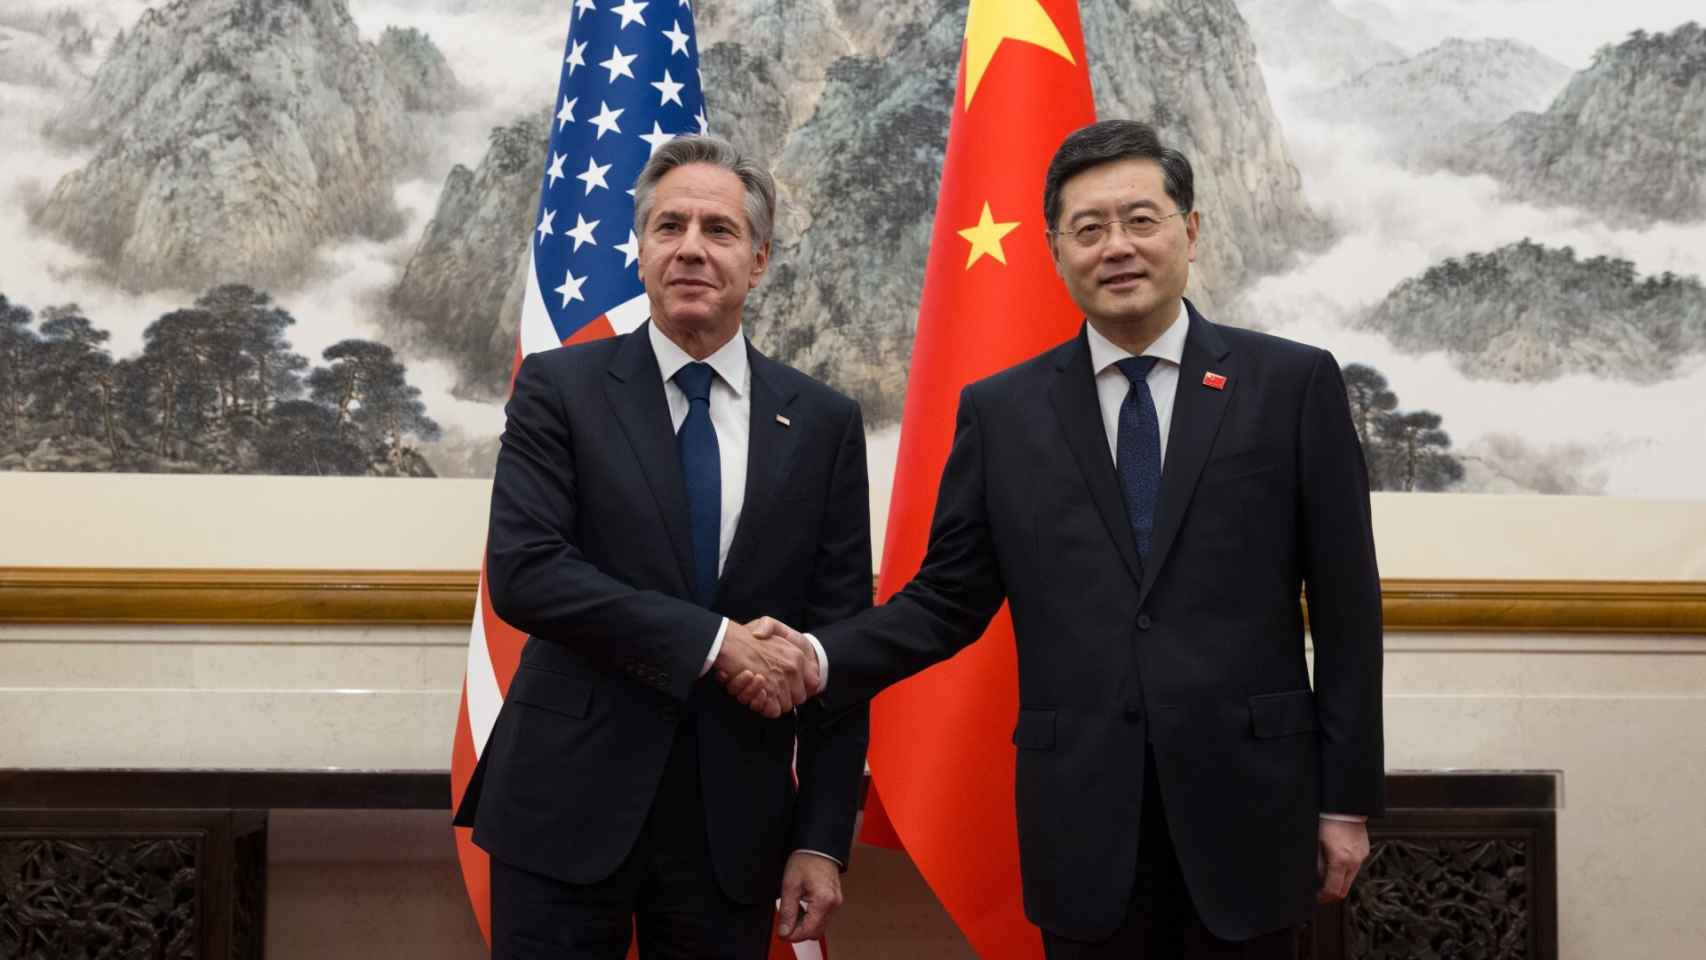 El canciller chino confirma a Blinken que las relaciones China - EEUU están en el punto más bajo